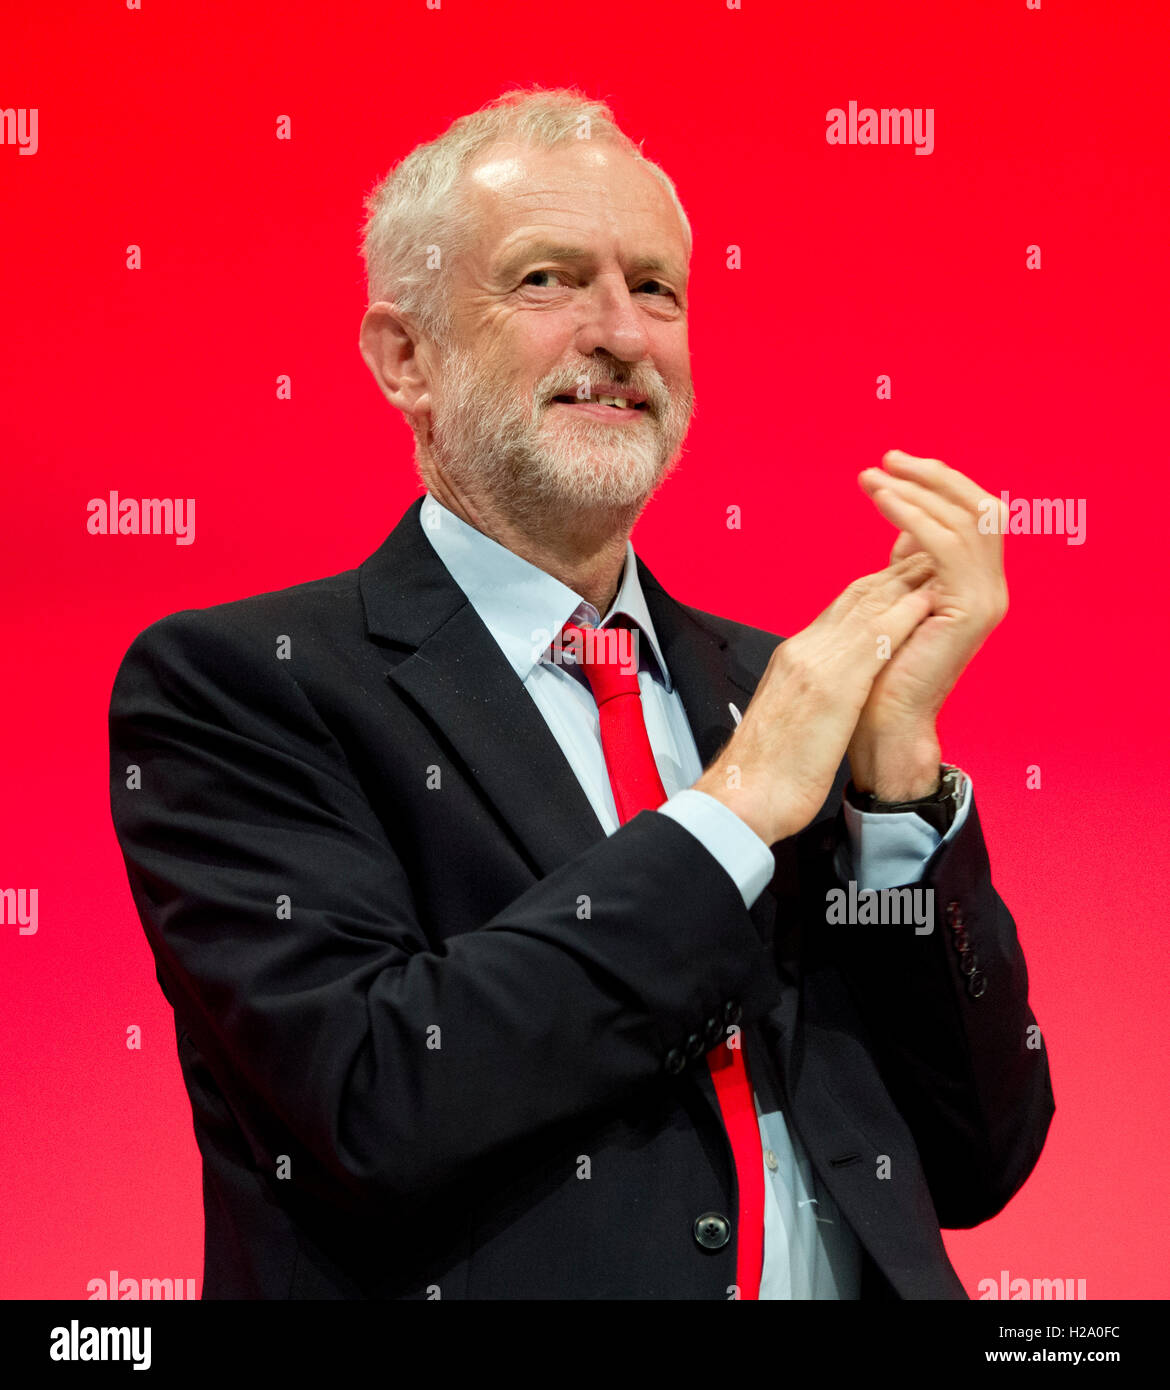 Liverpool, Regno Unito. Il 26 settembre 2016. Leader laburista Jeremy Corbyn applaude durante il giorno due del partito laburista conferenza in Liverpool. Credito: Russell Hart/Alamy Live News. Foto Stock